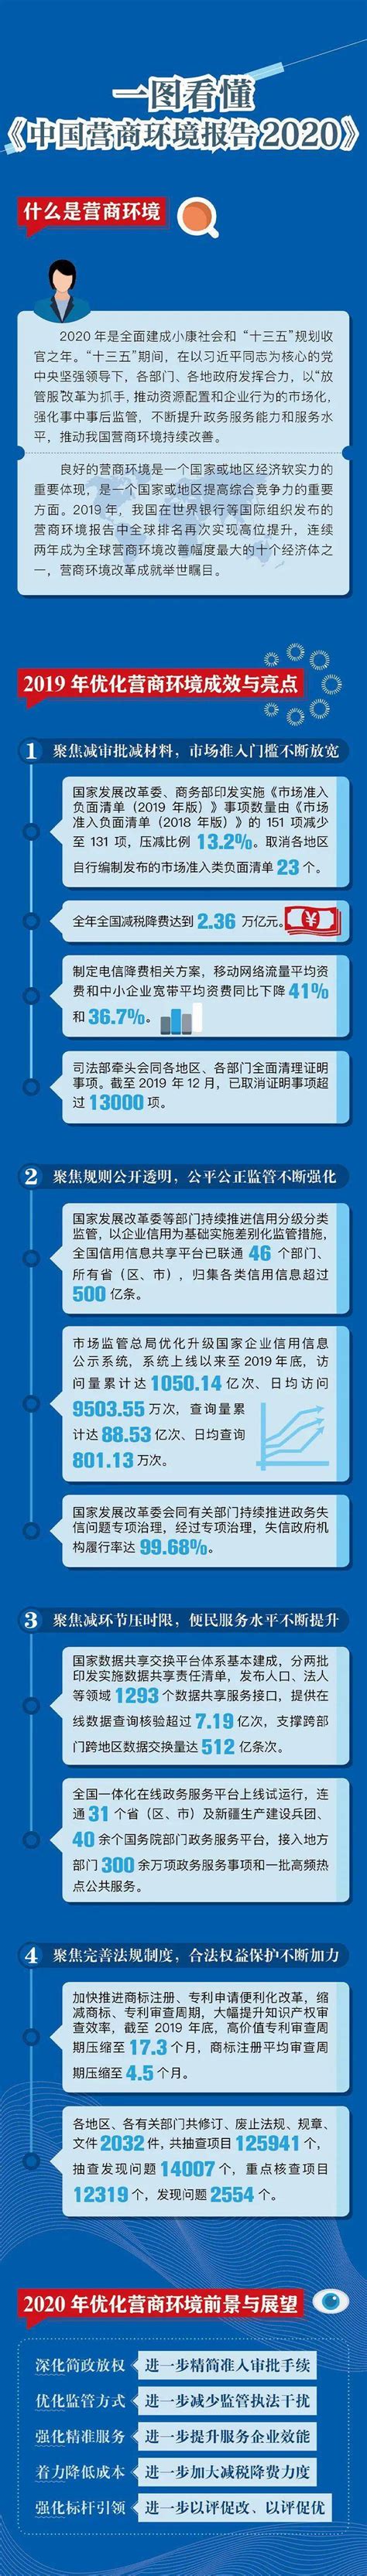 一图看懂《中国营商环境报告2020》_最新动态_国脉电子政务网